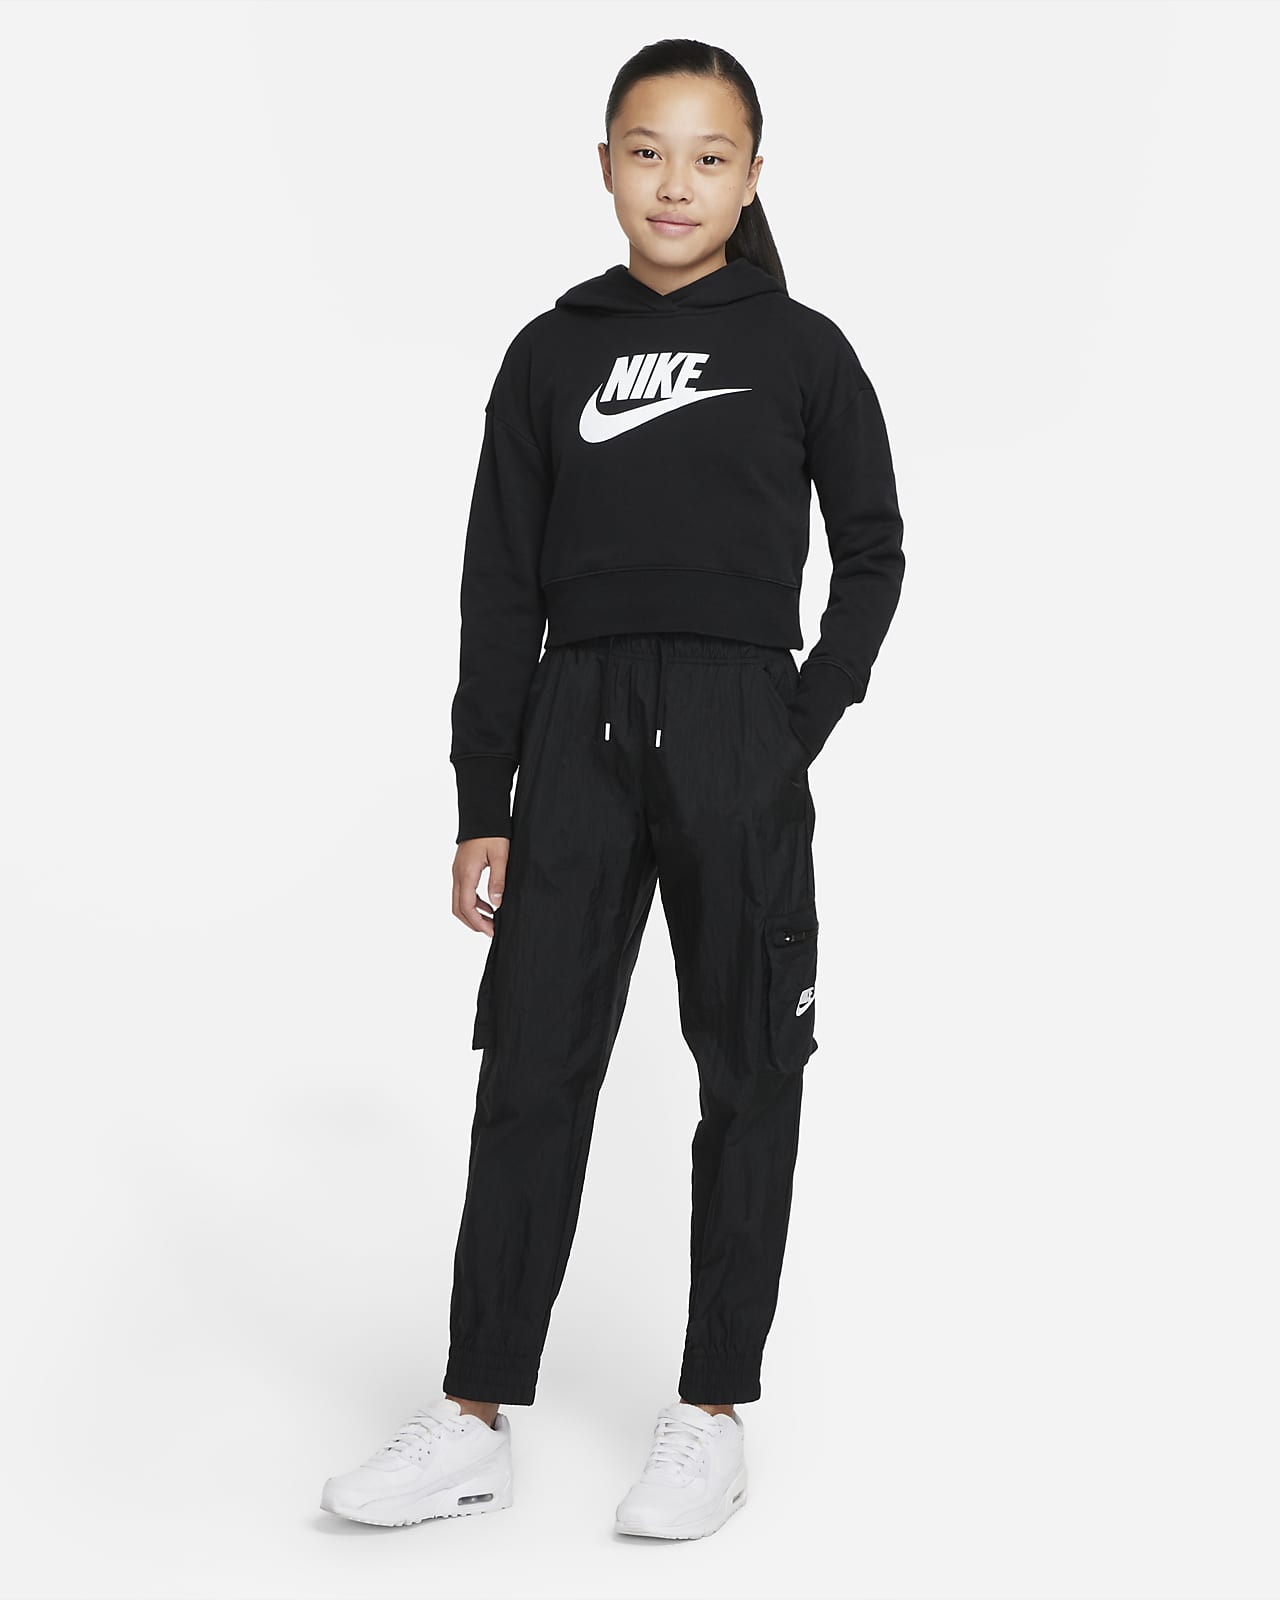 Nike Sportswear Big Kids' (Girls') Woven Cargo Pants.